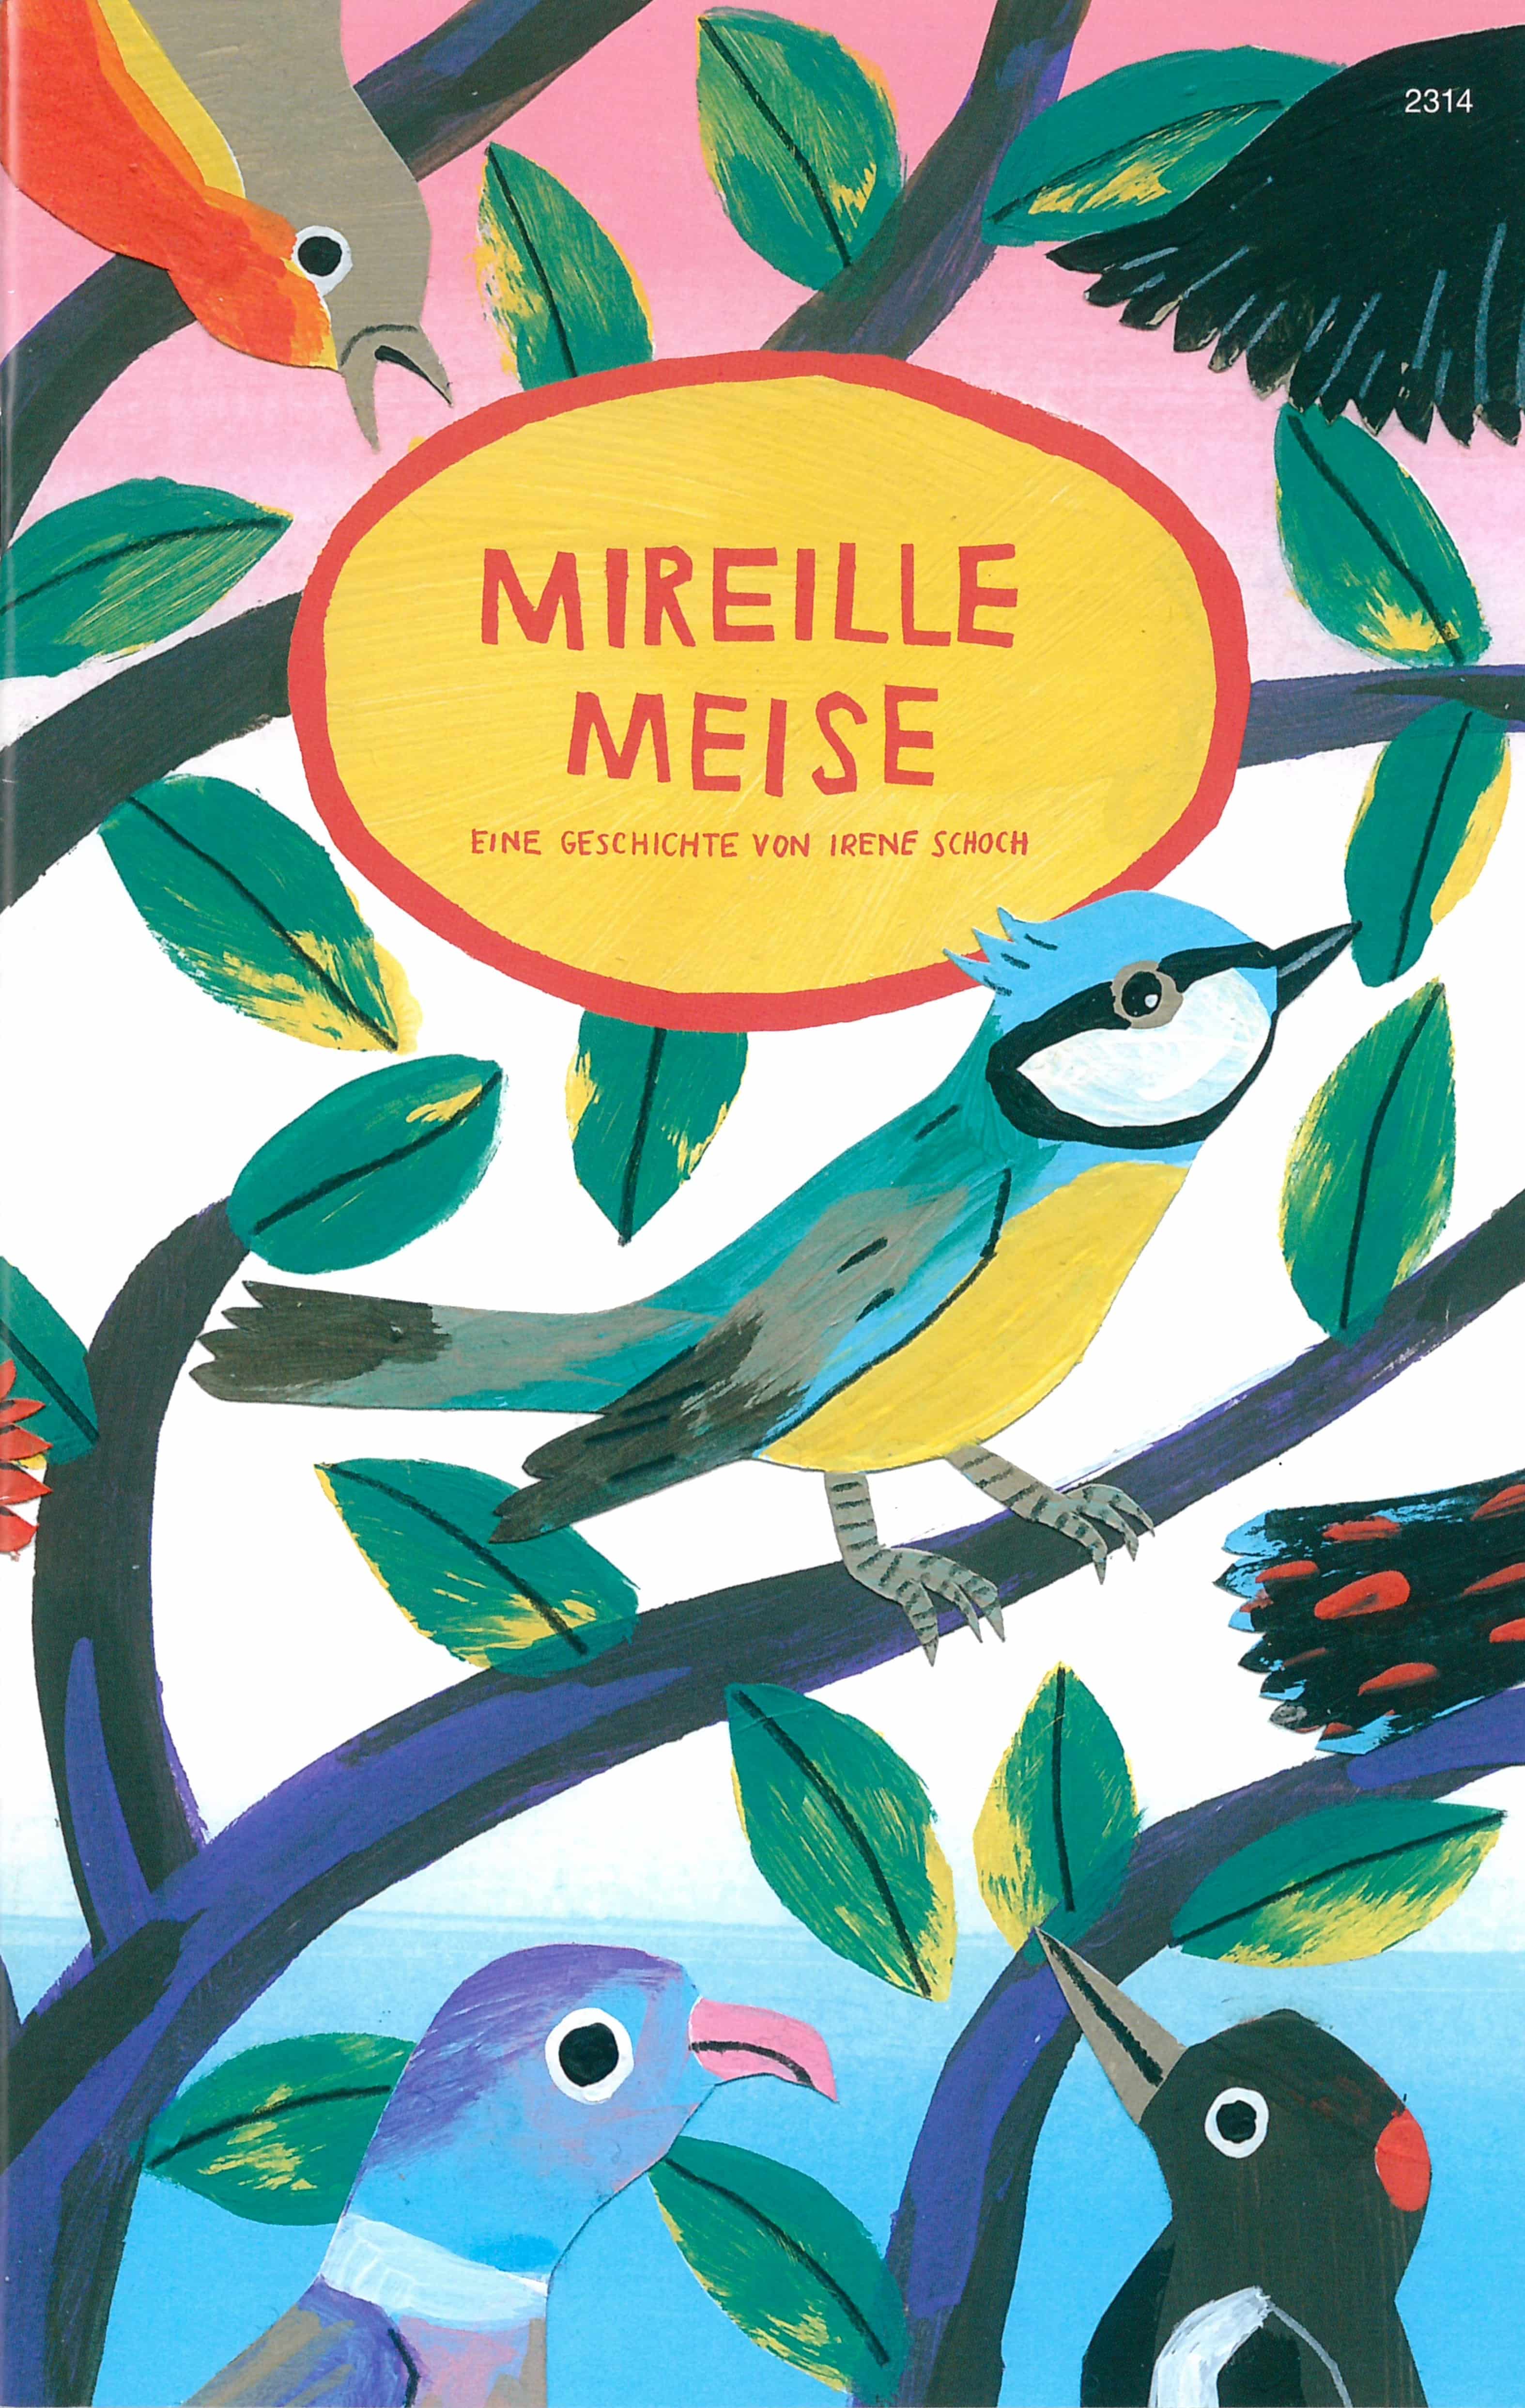 Mireille Meise, ein Kinderbuch von Irene Schoch, SJW Verlag, Jahreszeiten, Mobbing & Toleranz